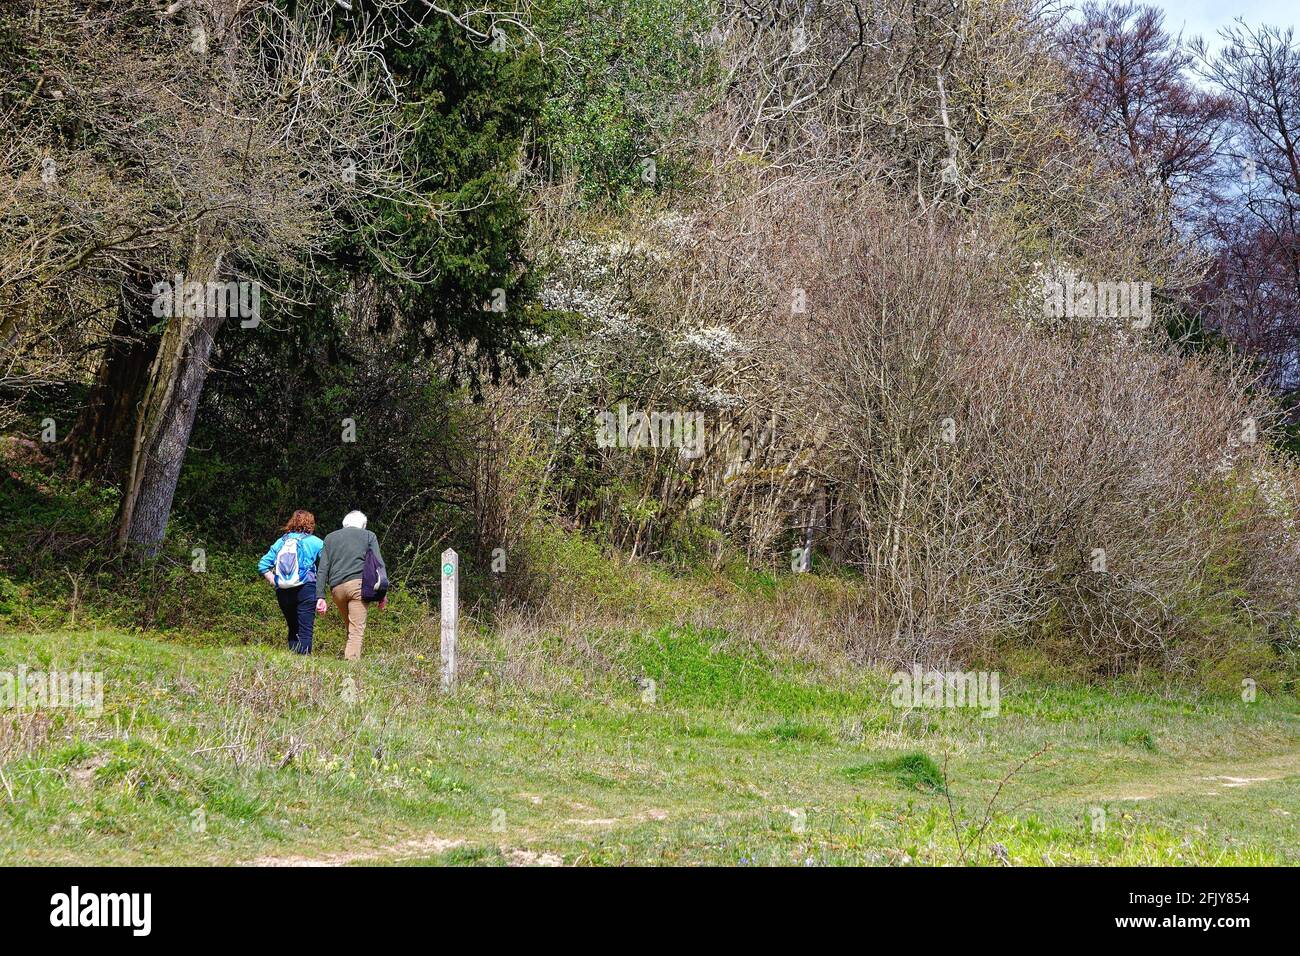 Un couple de personnes âgées se bat à flanc de colline sur North Downs Way Sentier à White Downs, près de Dorking, au cours d'une source ensoleillée Day, Surrey Hills, Angleterre, Royaume-Uni Banque D'Images